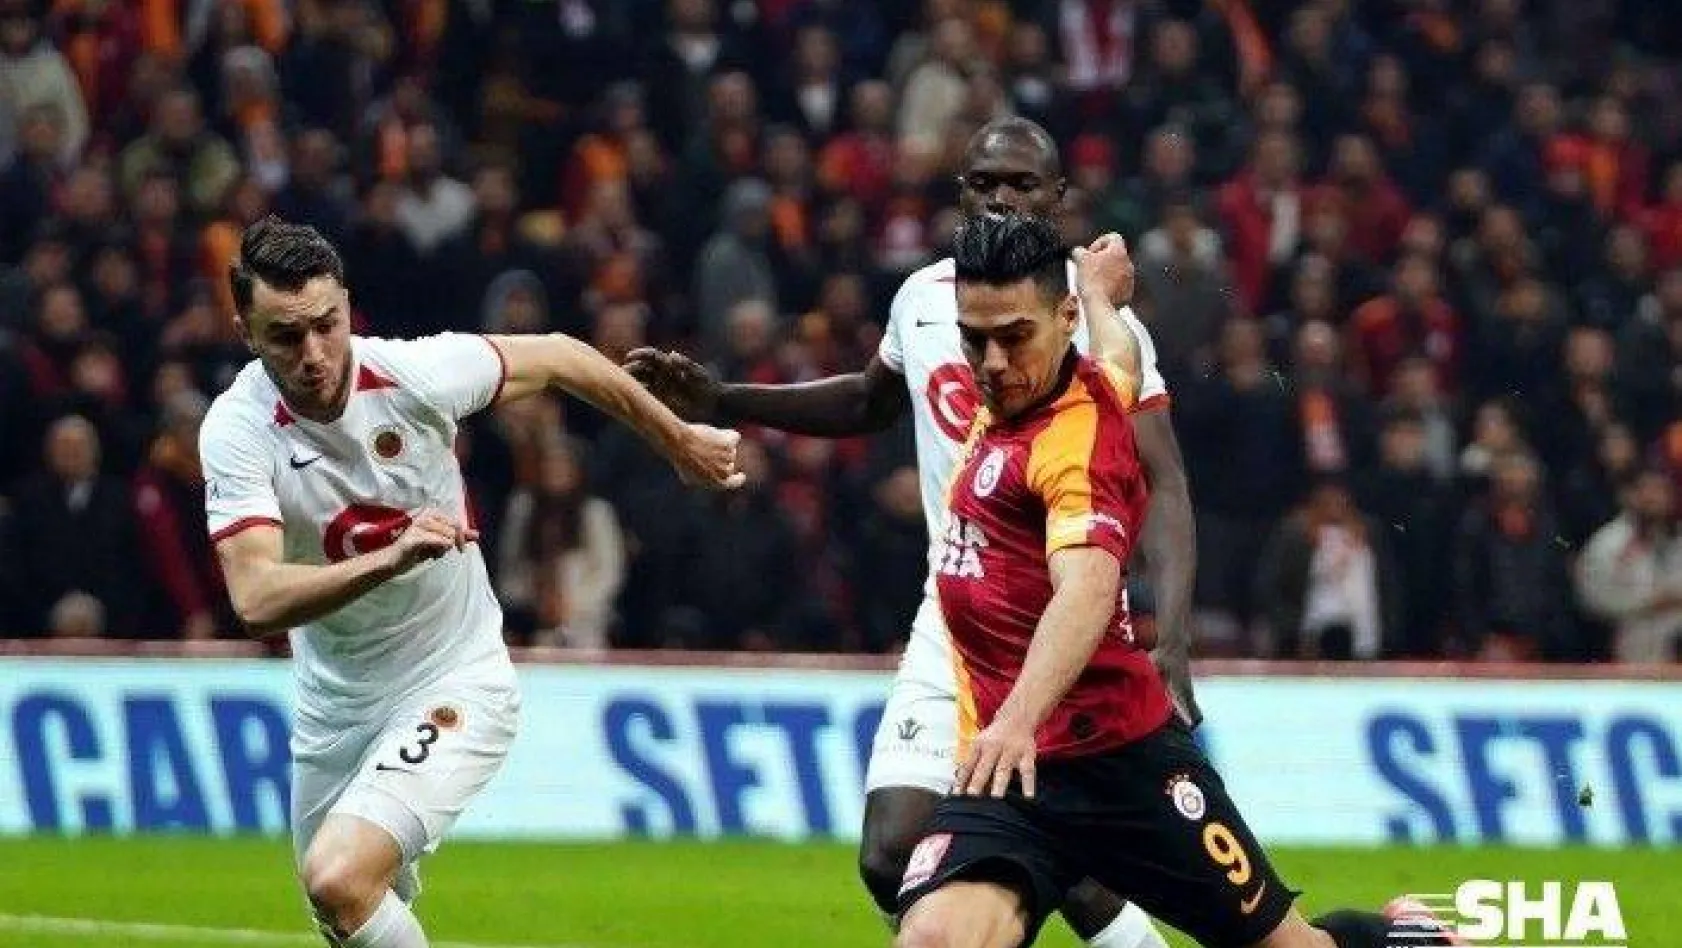 Galatasaray'da Falcao, Ankaragücü'ne karşı yok